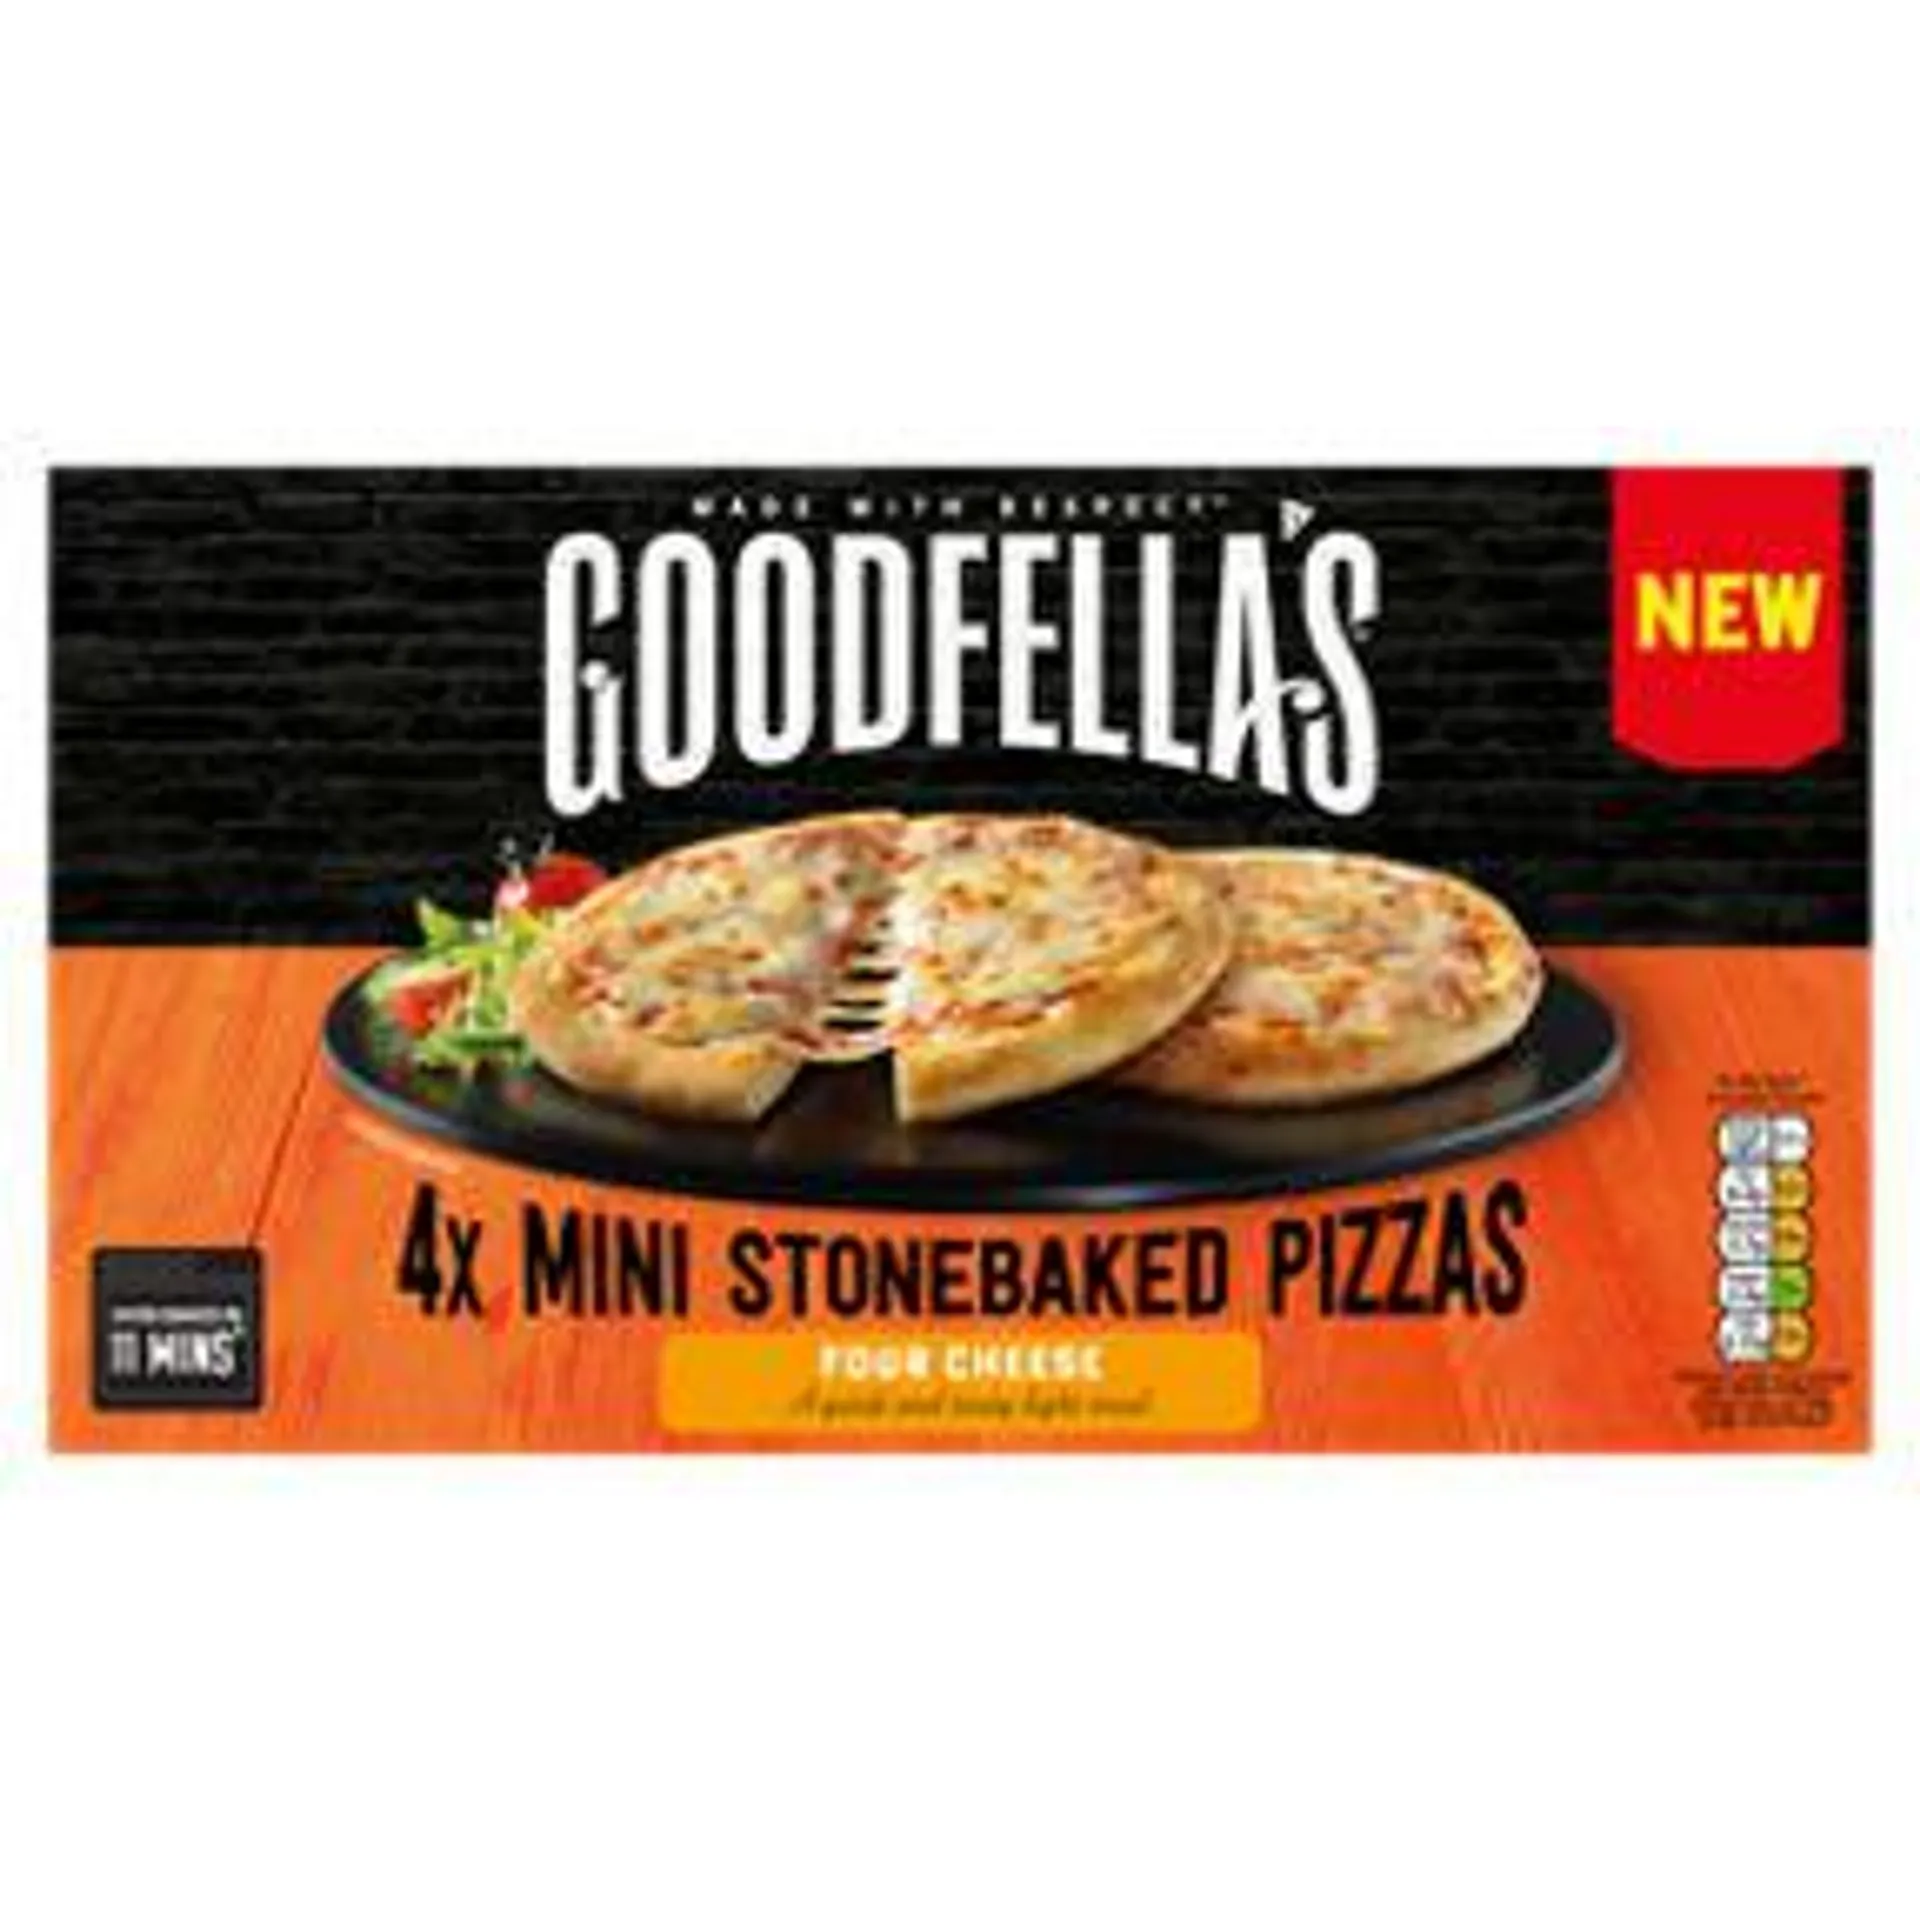 Goodfella's 4x Mini Stonebaked Pizzas Four Cheese